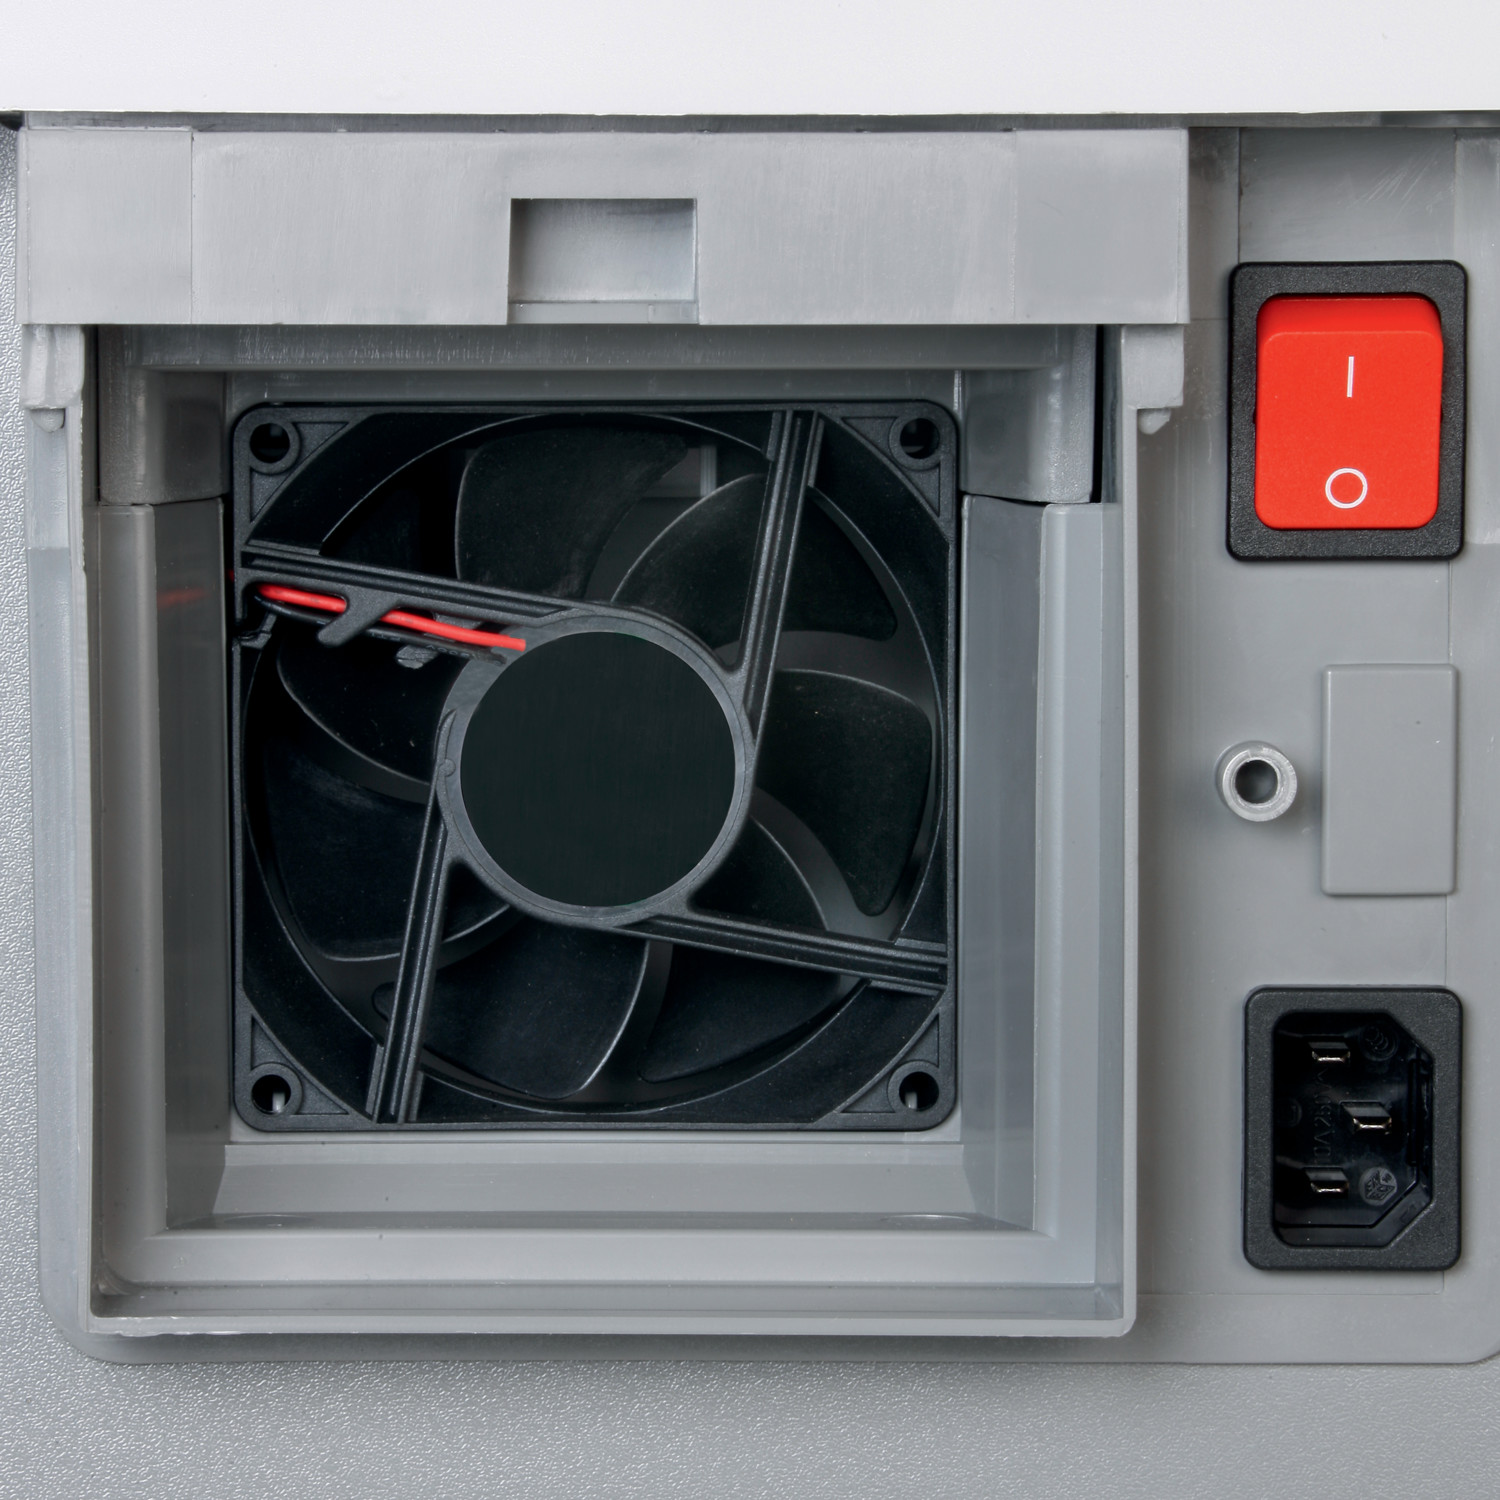 Výkonný ventilátor nasává drobounké částice prachu uvnitř skartovače a odvádí je k filtru